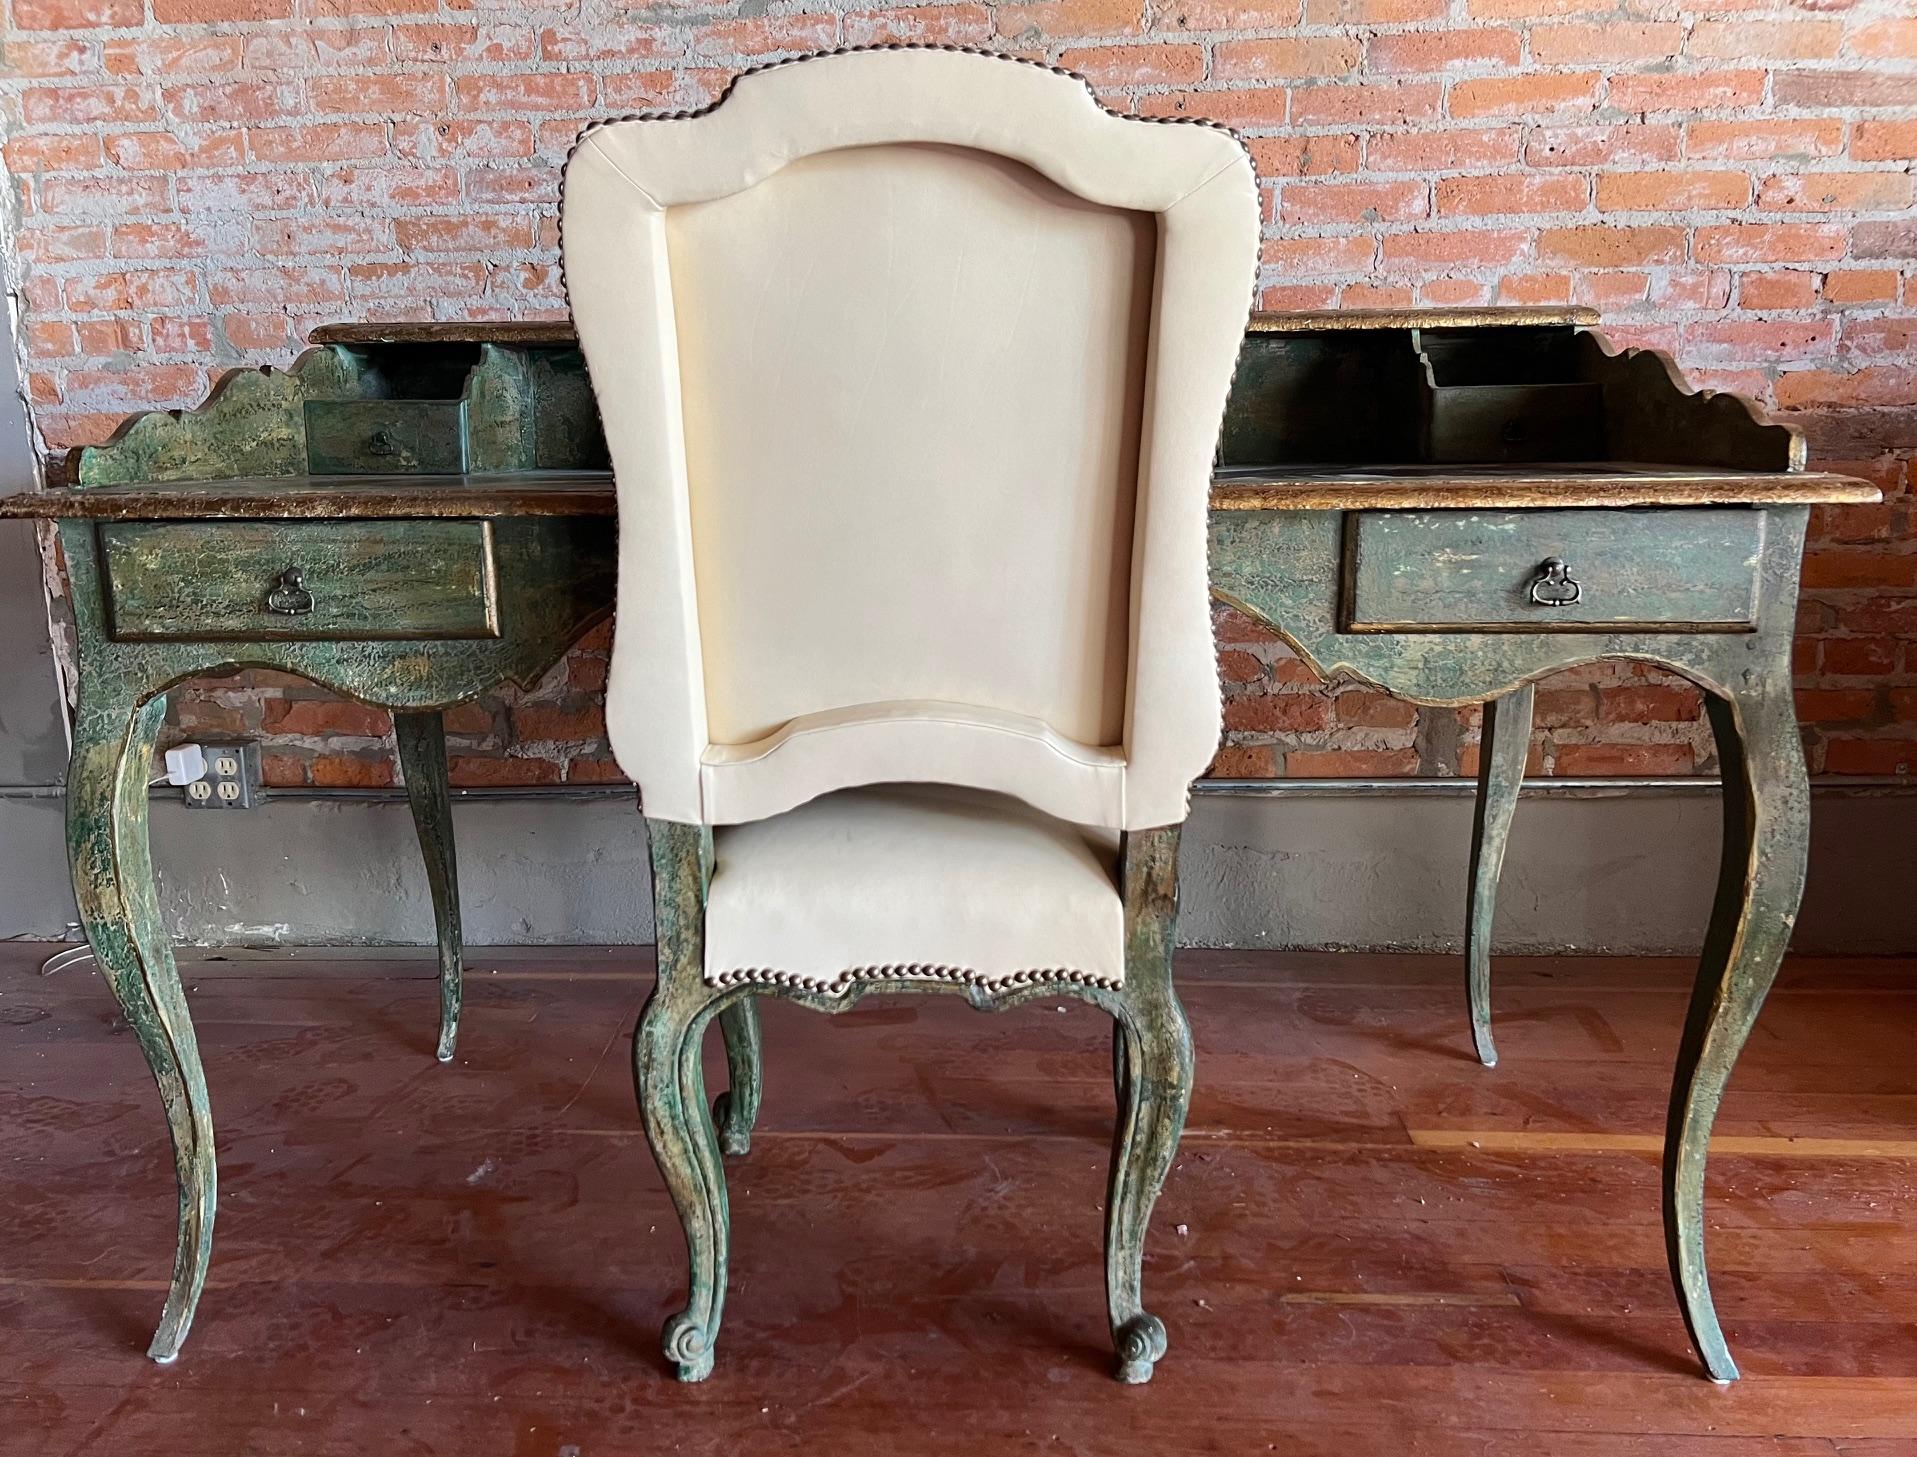 La reproduction fine et personnalisée d'un bureau et d'une chaise du XVIIIe siècle est unique et fabriquée à la main. La finition s'appelle Pomme de Jade  Le bureau est doté d'un plateau en cuir. La chaise et le bureau ont des finitions assorties,